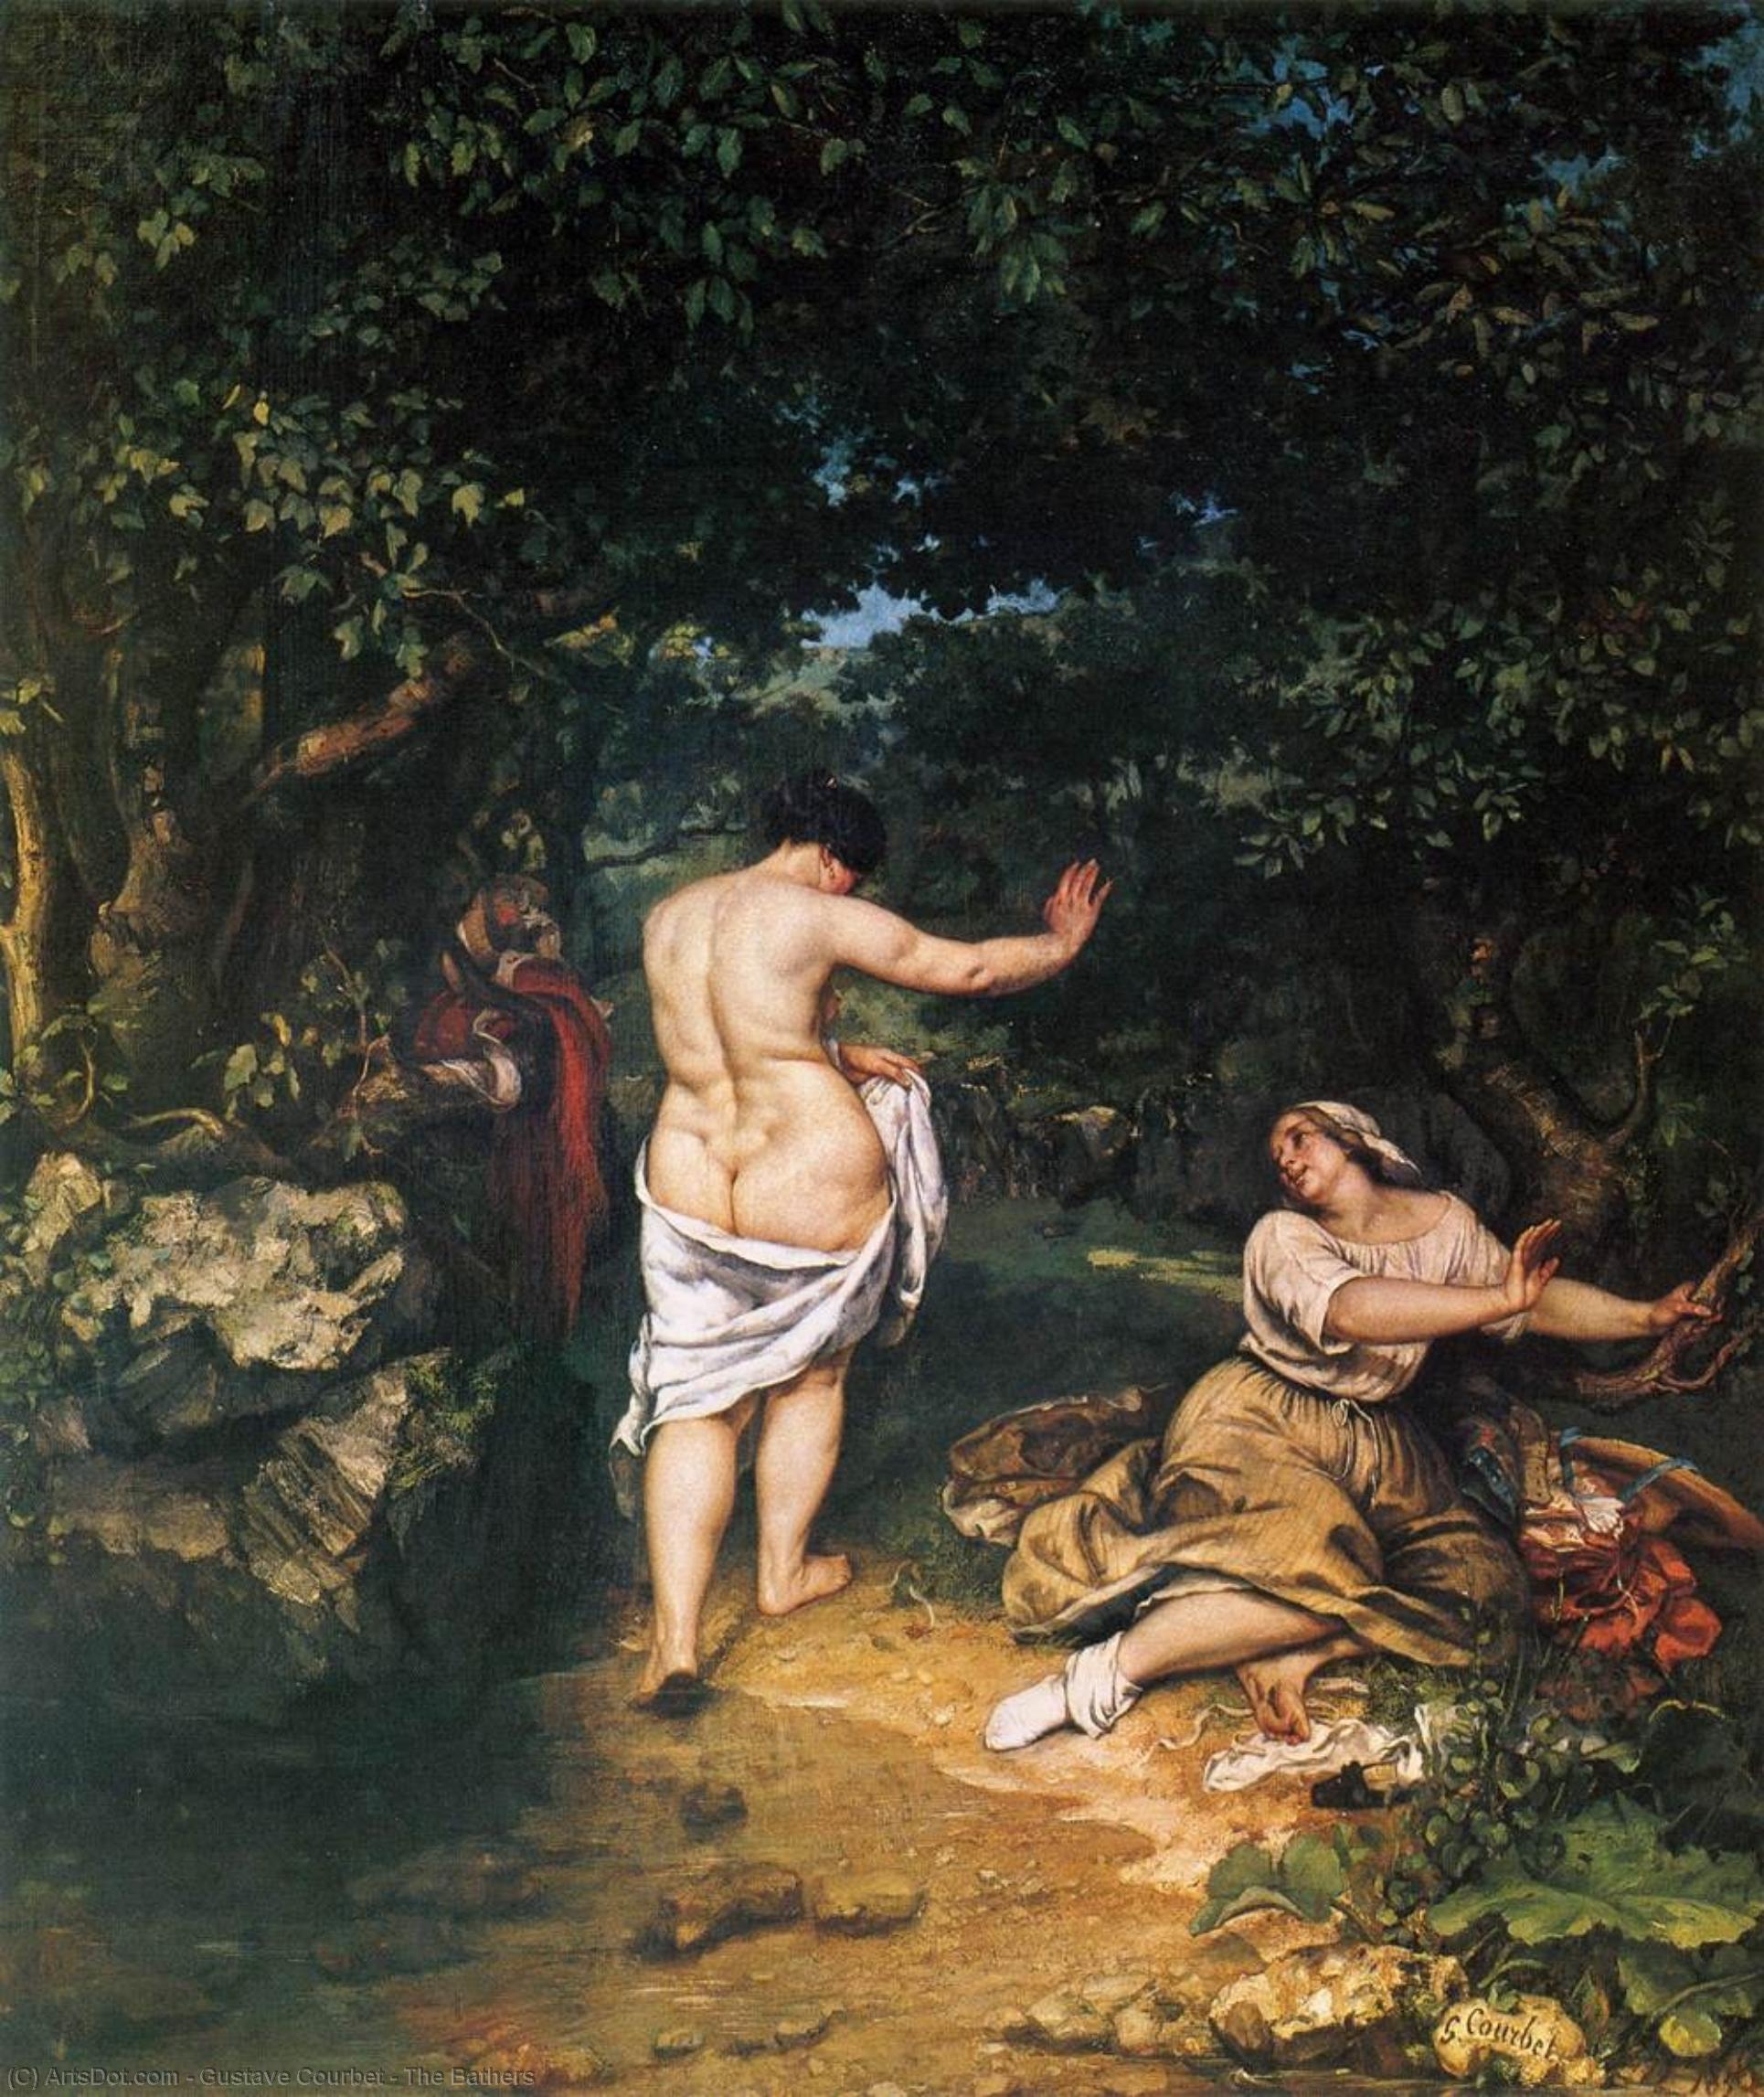 WikiOO.org - אנציקלופדיה לאמנויות יפות - ציור, יצירות אמנות Gustave Courbet - The Bathers